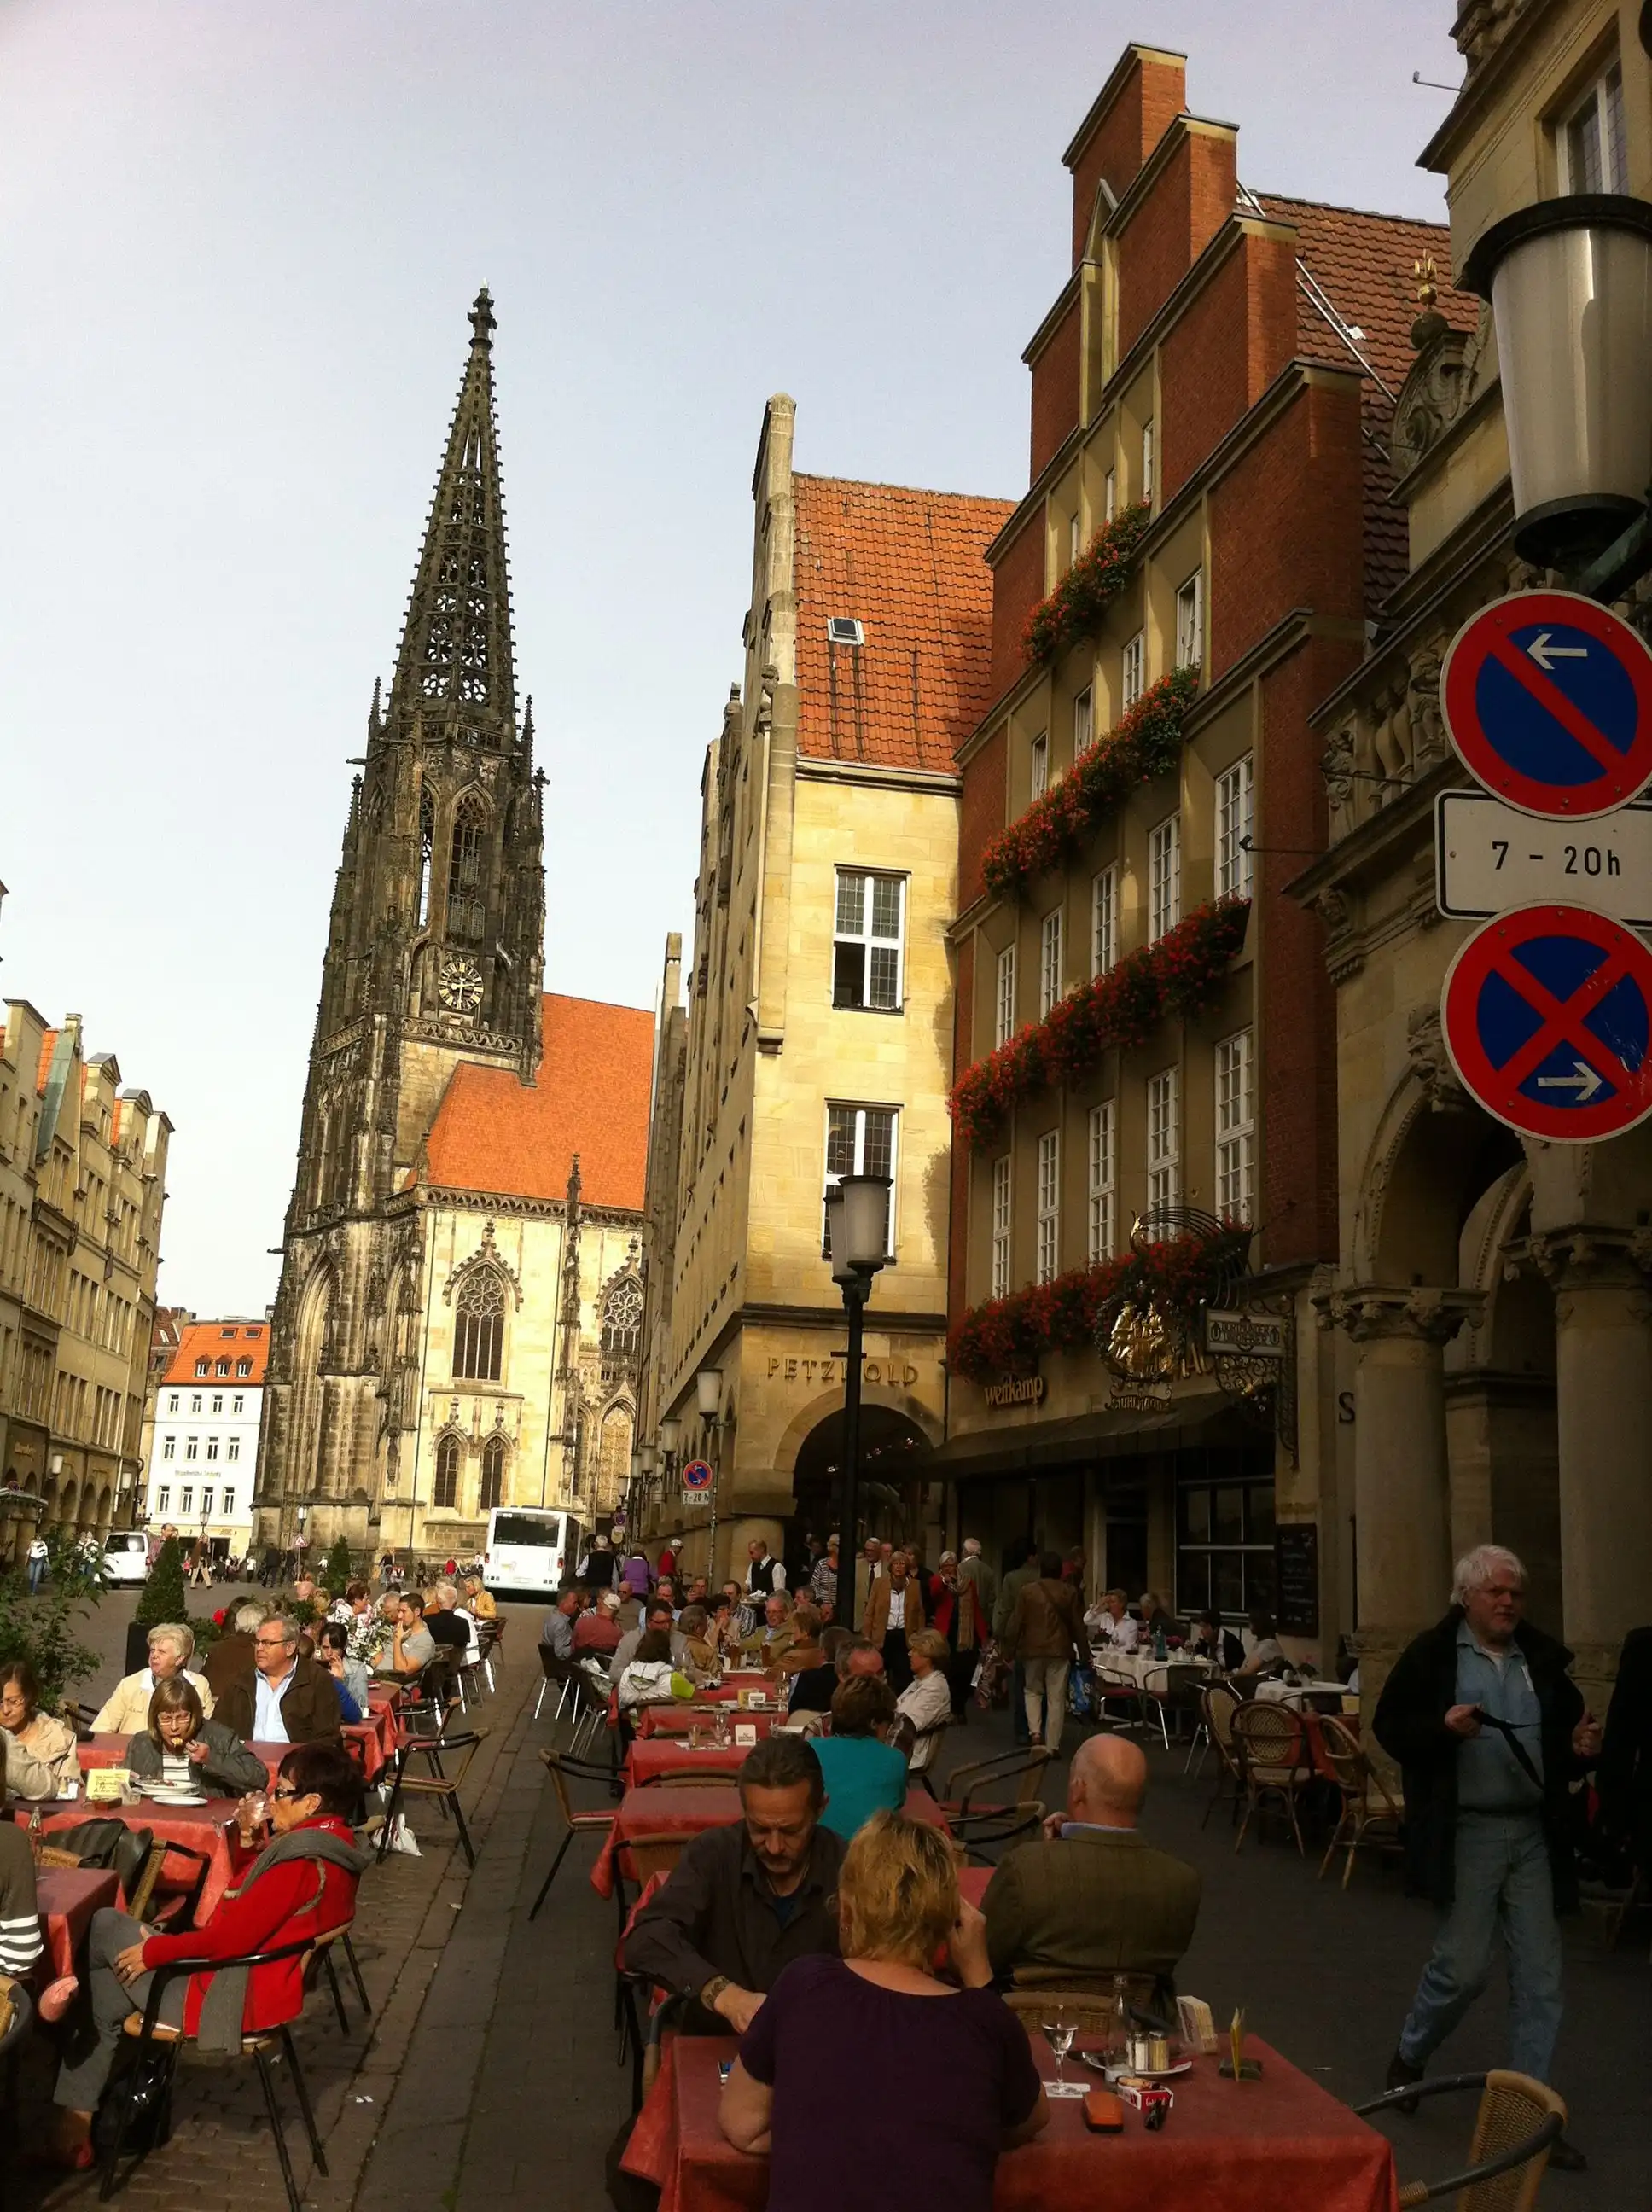 Münster tourism